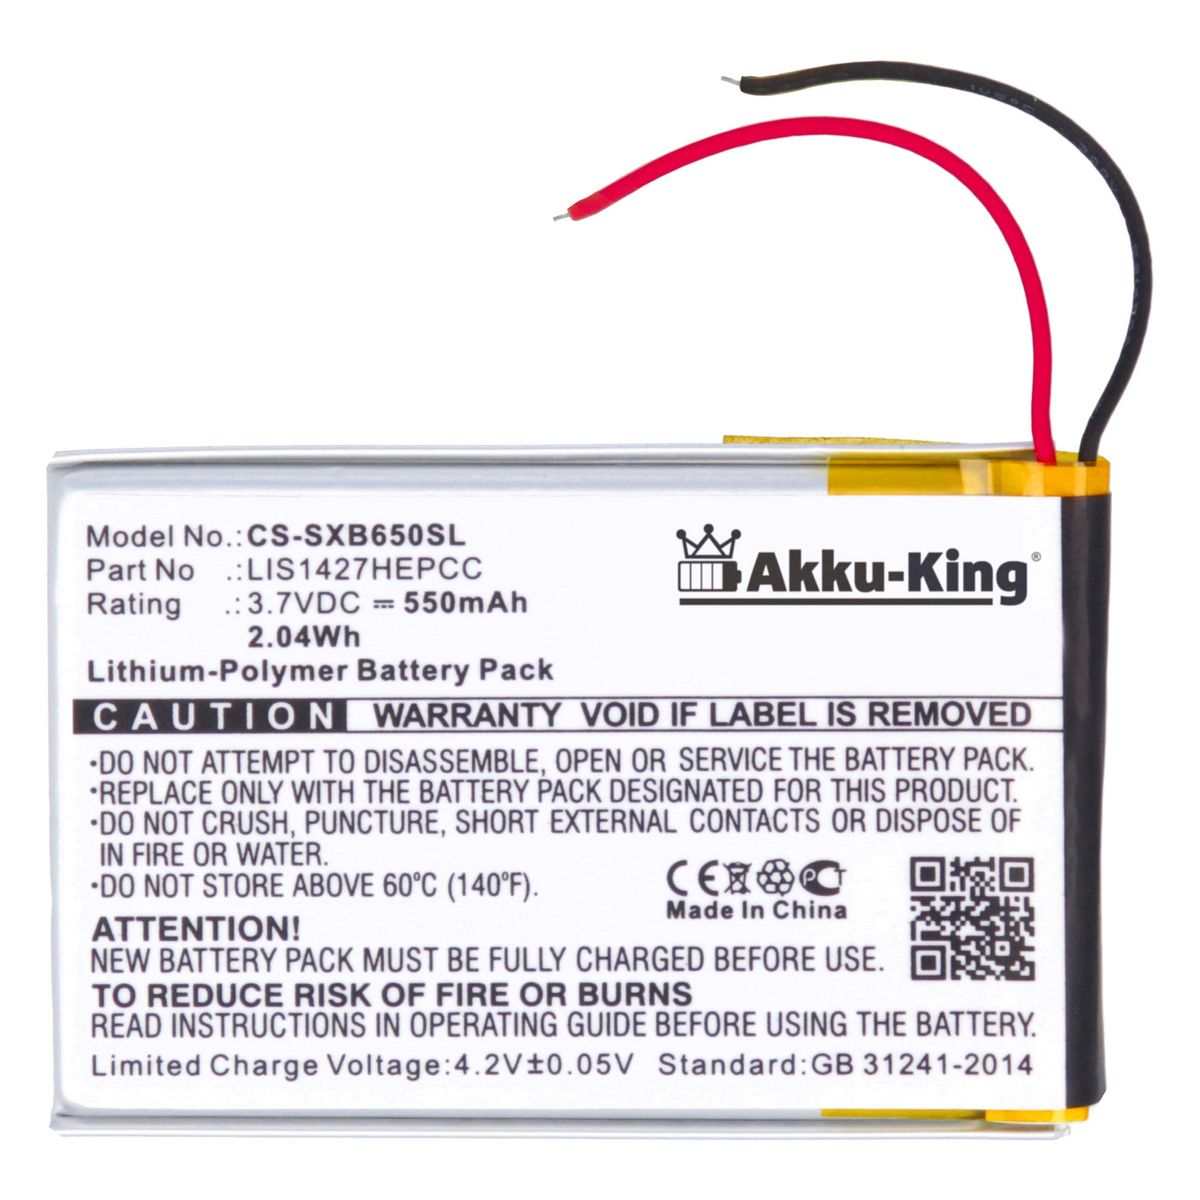 AKKU-KING Akku kompatibel 3.7 Volt, Li-Polymer 550mAh Geräte-Akku, mit 1-756-920-31 Sony